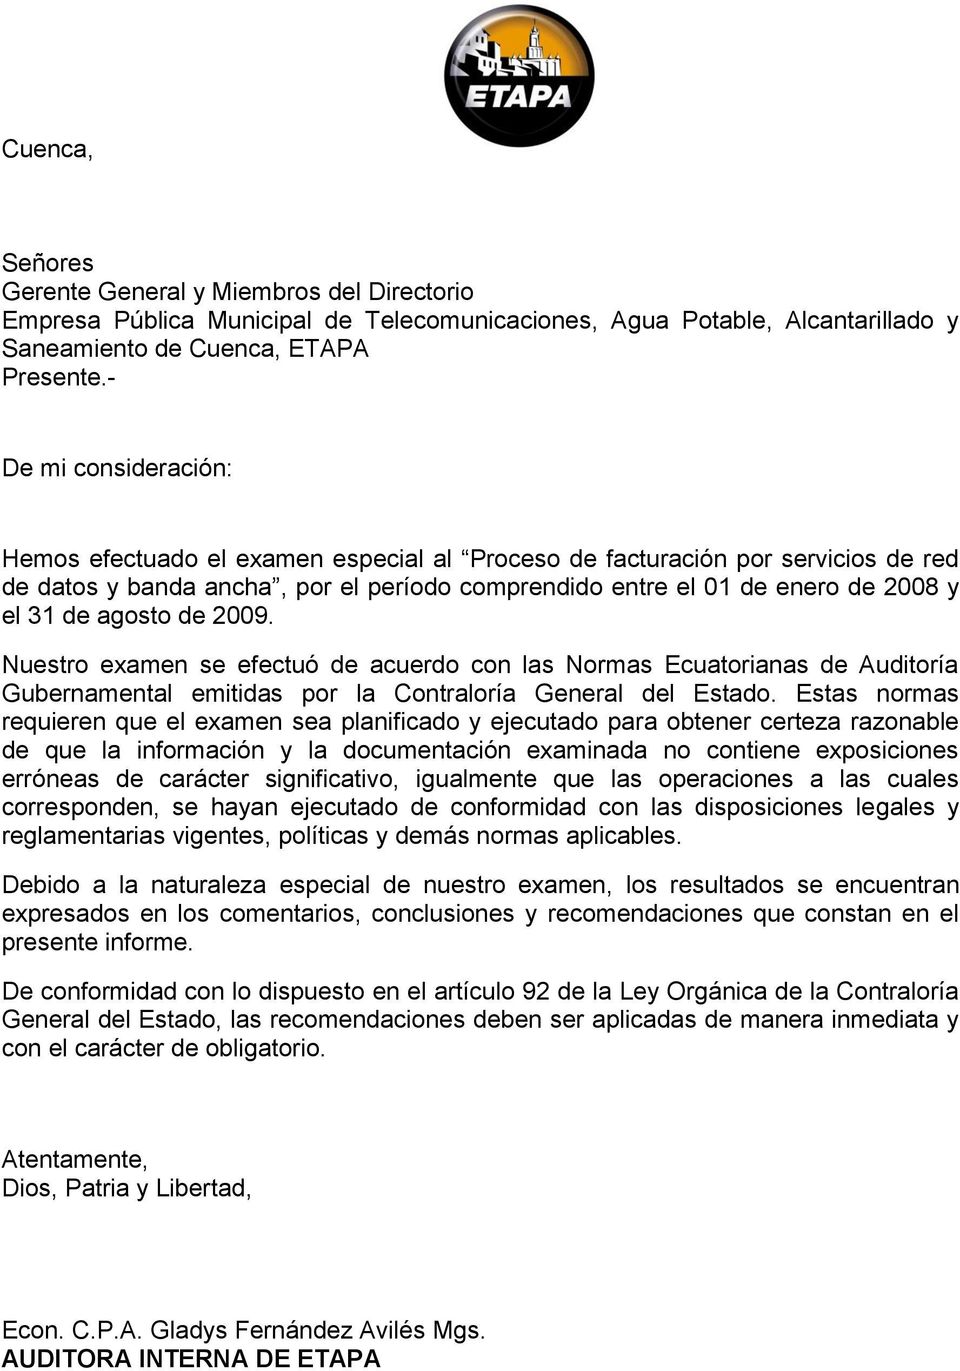 agosto de 2009. Nuestro examen se efectuó de acuerdo con las Normas Ecuatorianas de Auditoría Gubernamental emitidas por la Contraloría General del Estado.